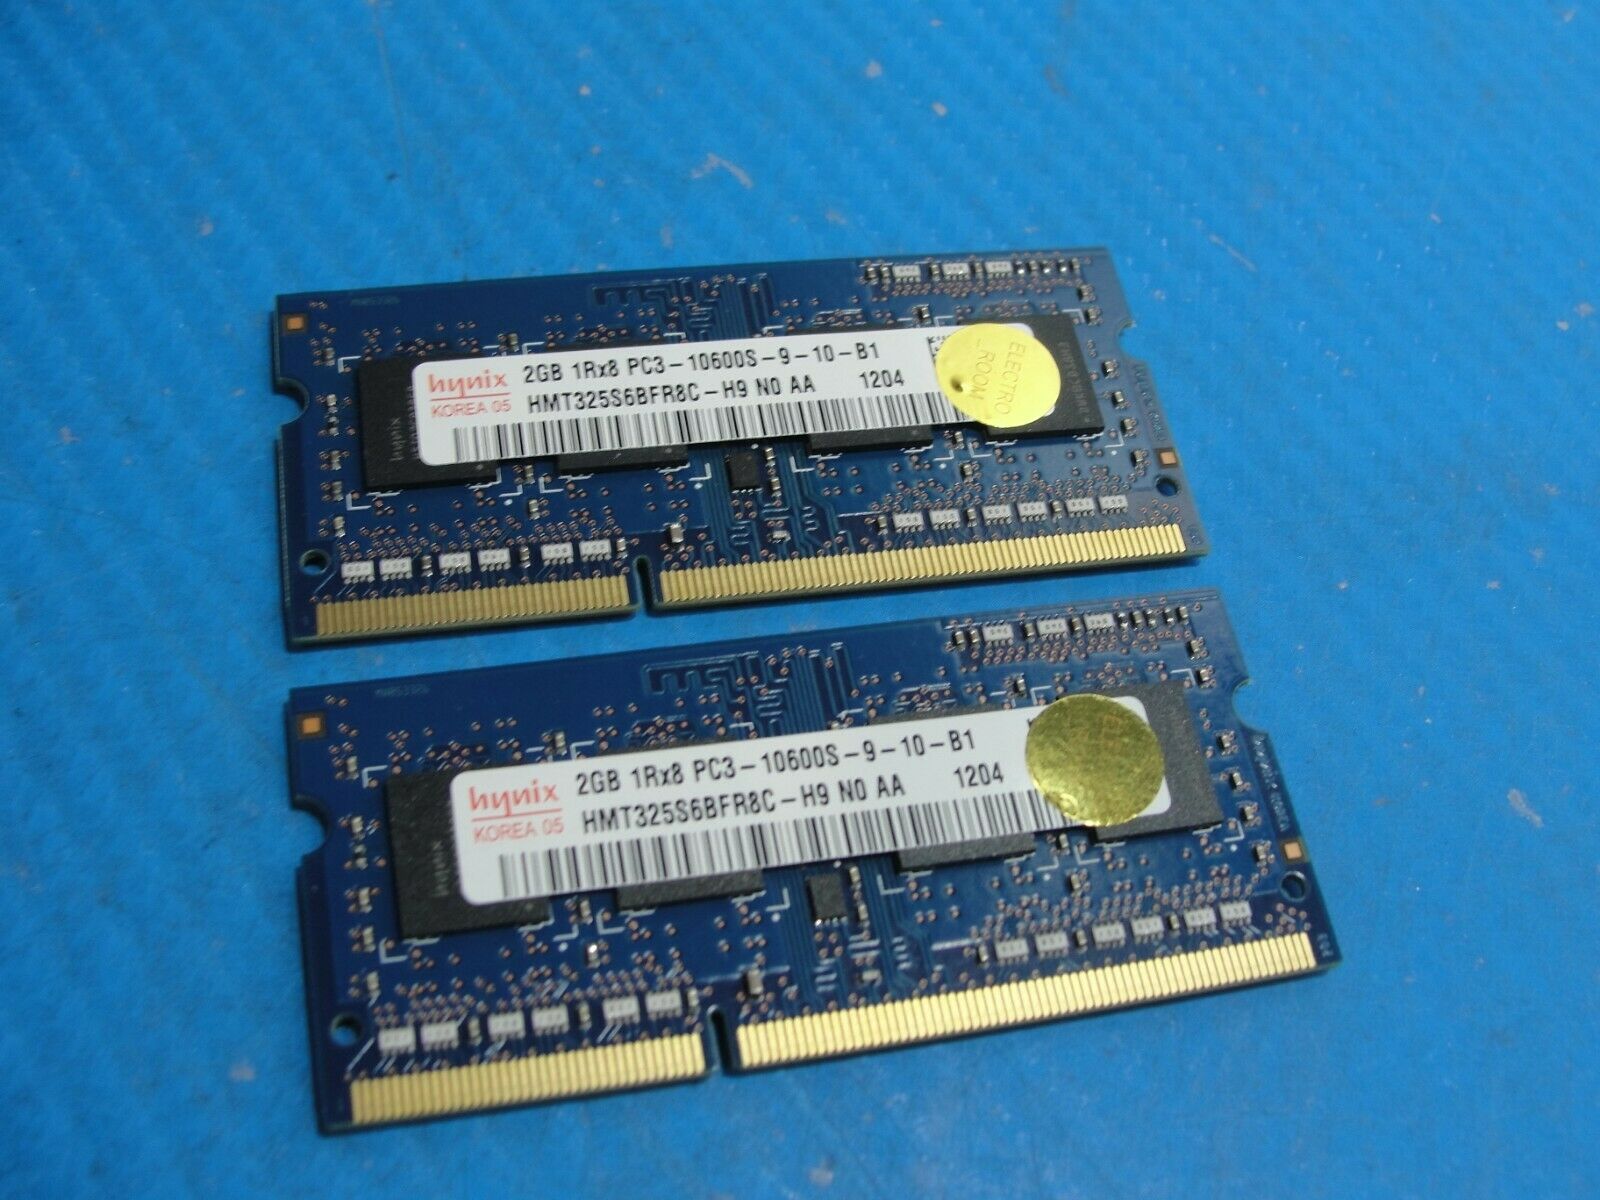 MacBook Pro A1286 Laptop Hynix 2GB x2 Memory PC3-10600S-9-10-B1 HMT325S6BFR8C-H9 - Laptop Parts - Buy Authentic Computer Parts - Top Seller Ebay